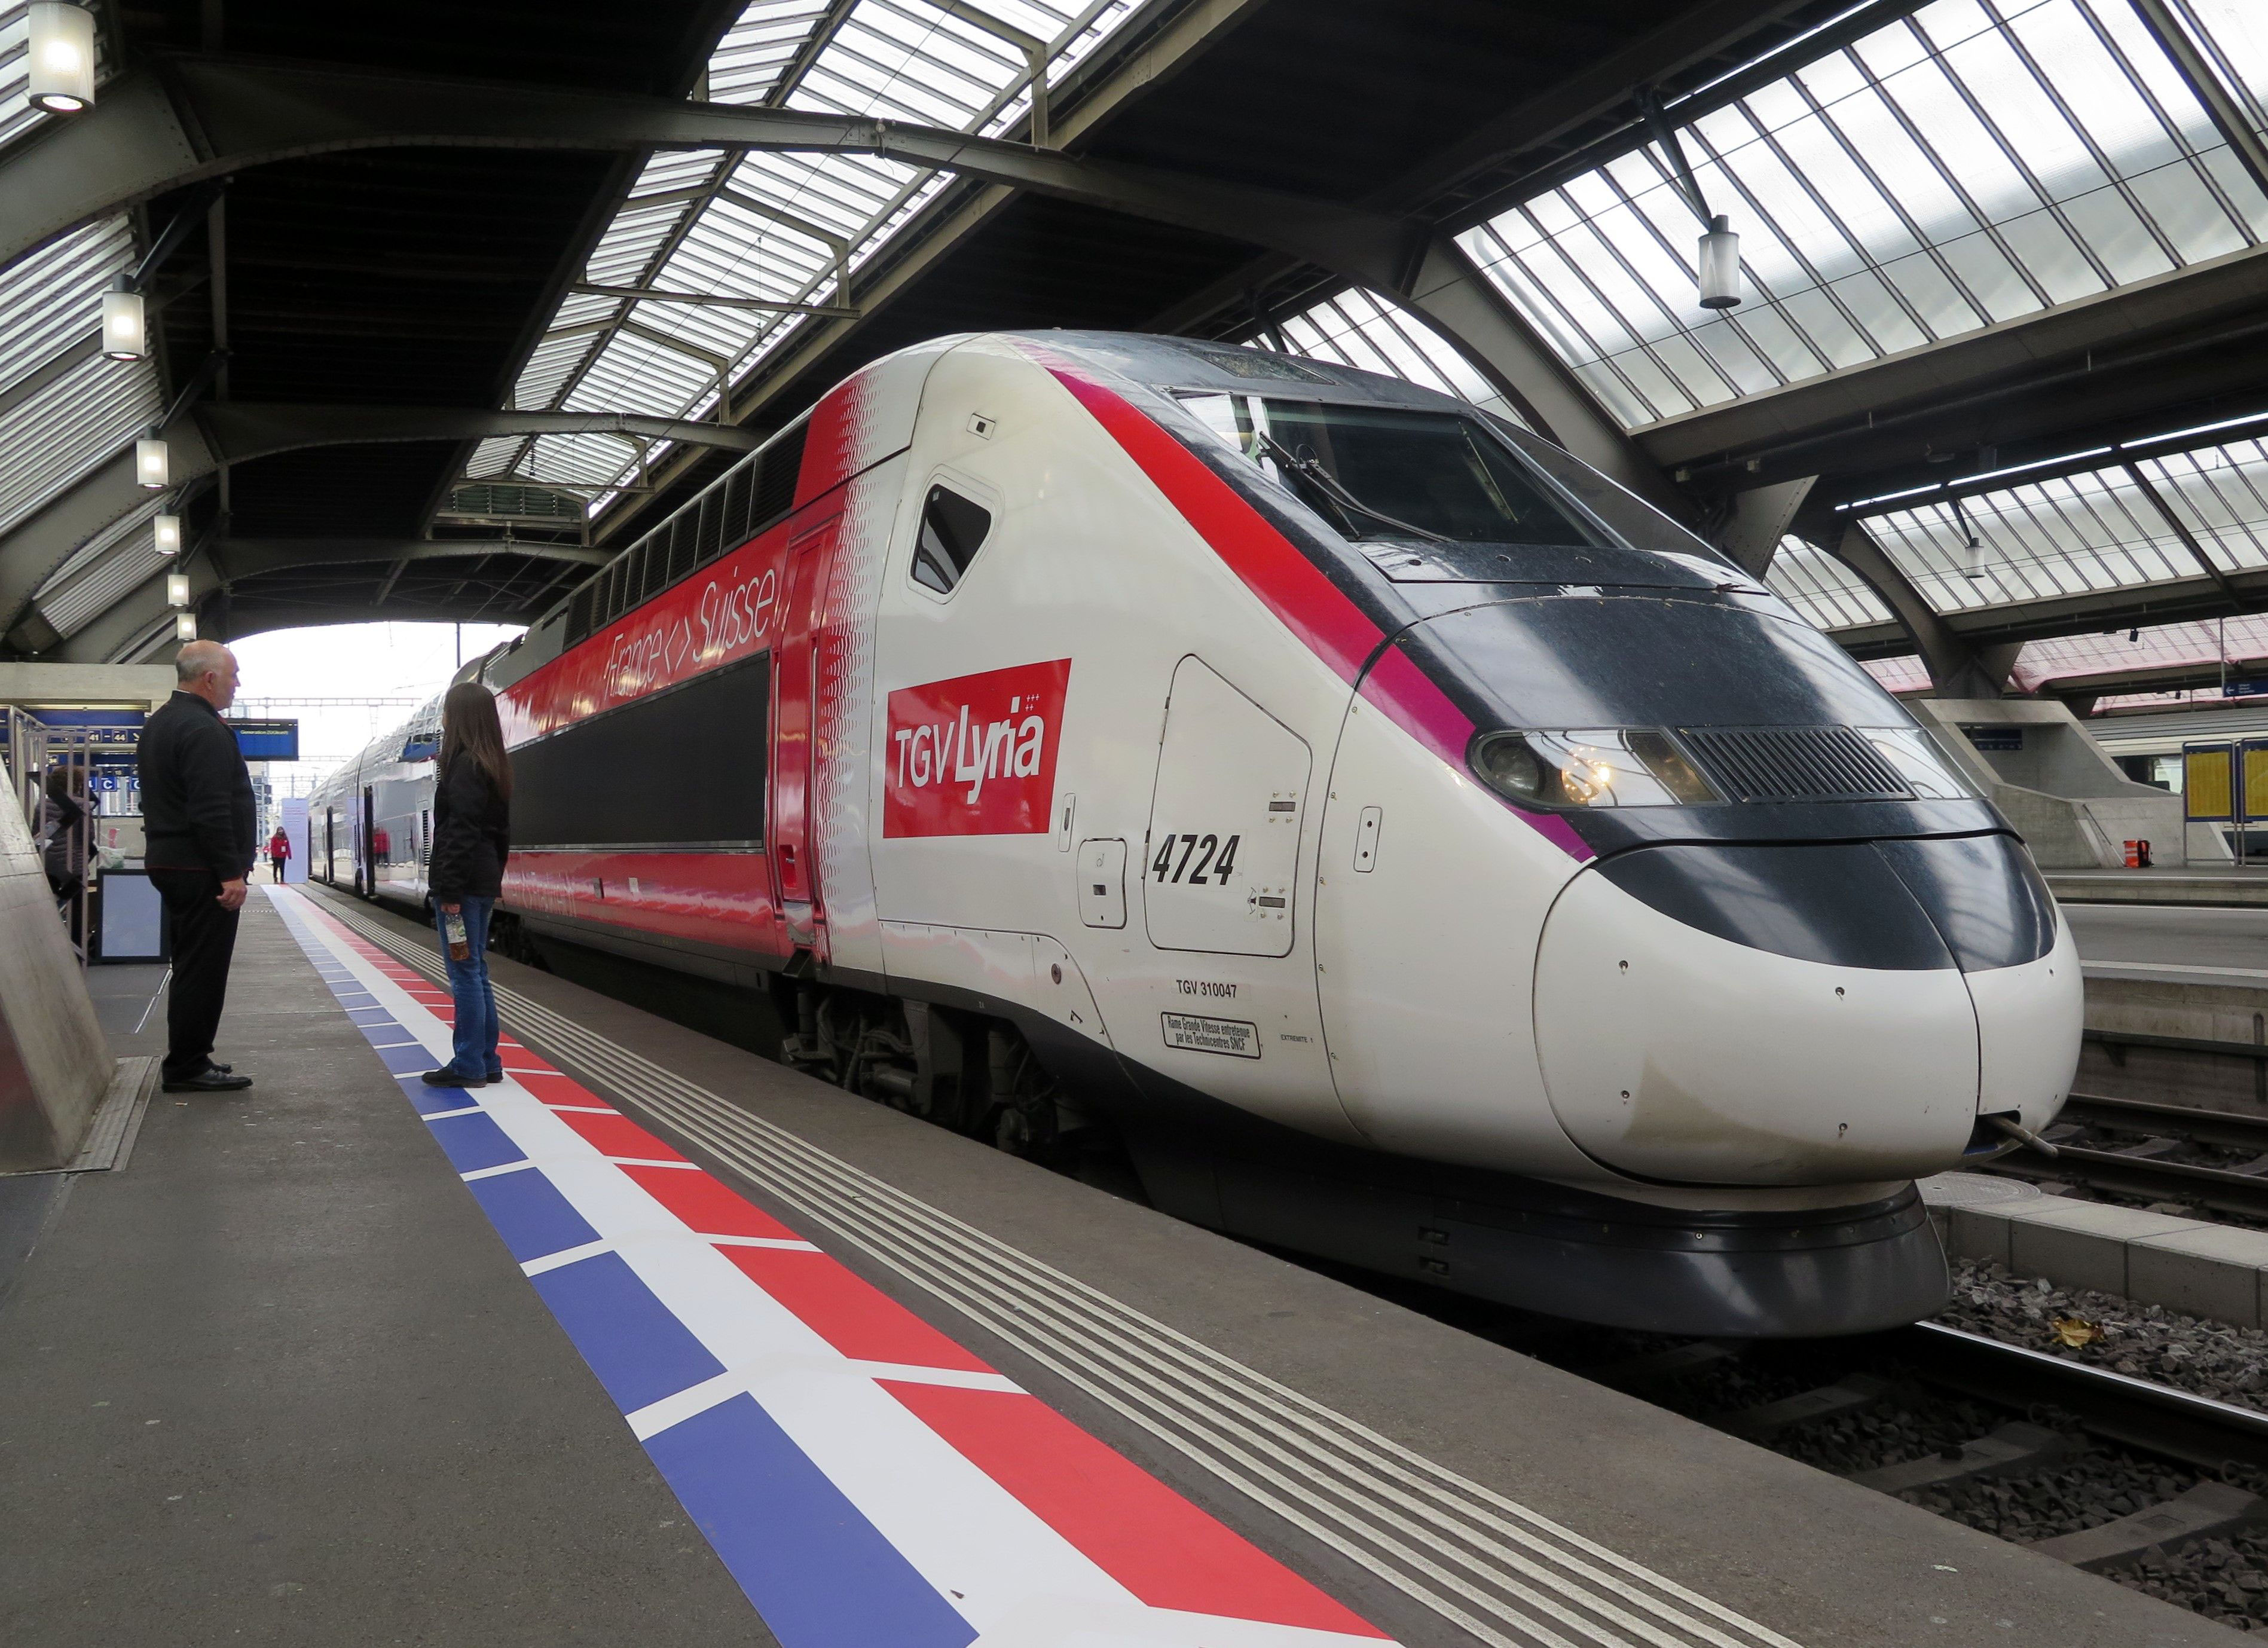 Neues Angebot von TGV Lyria 2020 nach Paris von Reisenden stark